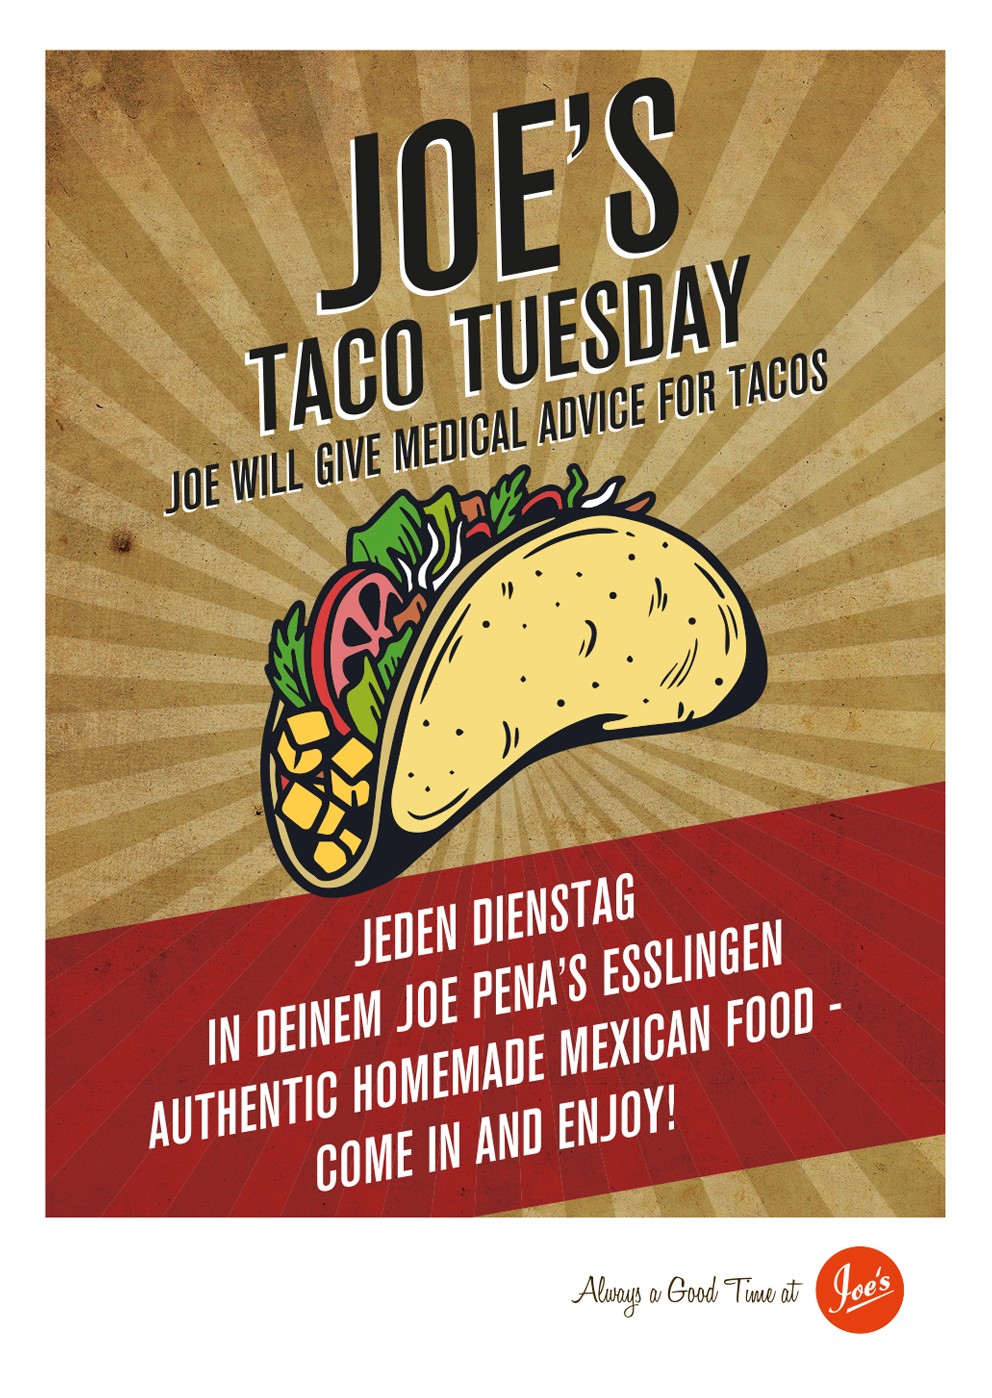 Joe's Taco Tuesday, Joe will give medical advice for tacos